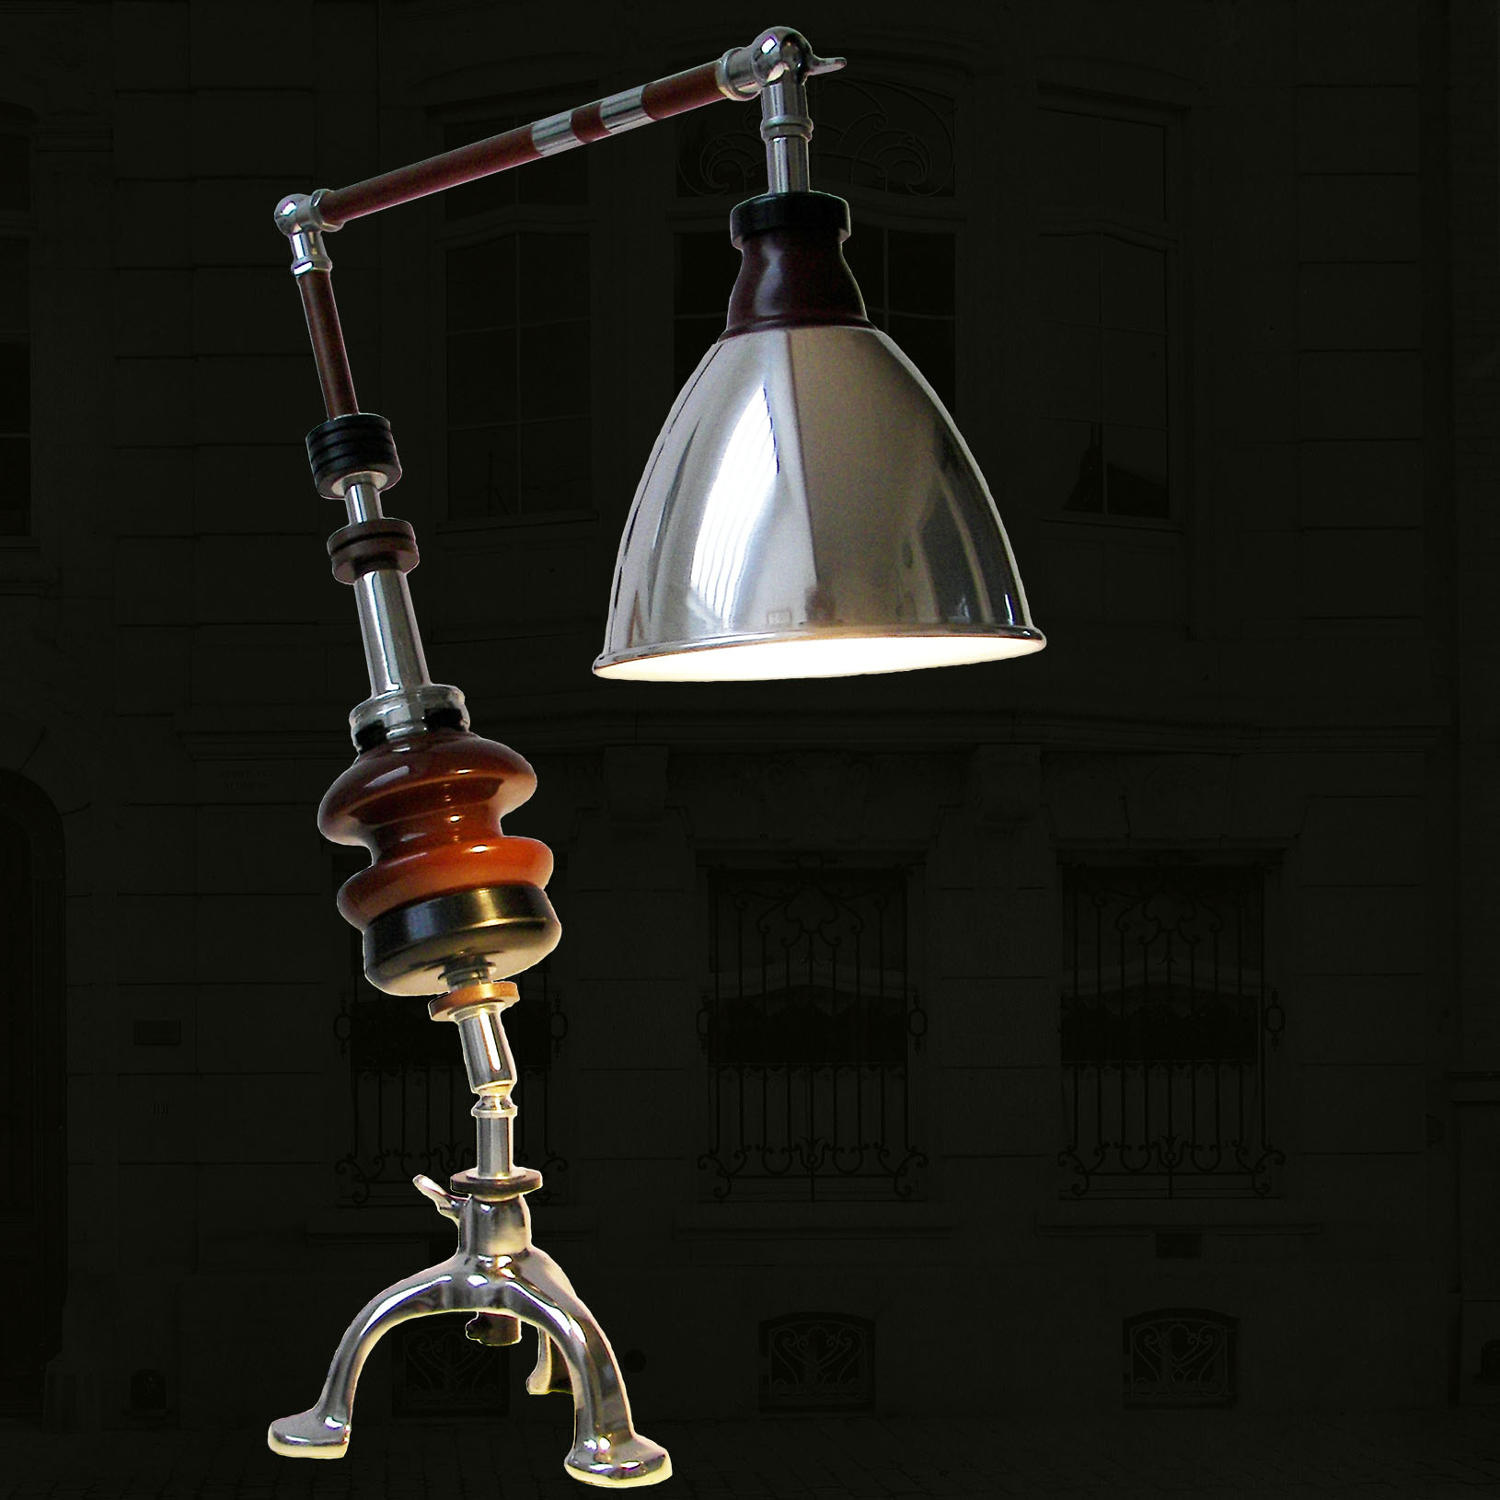 Unique sculptural lamp - Dissonance - by Gilles Bourlet Dartmouth